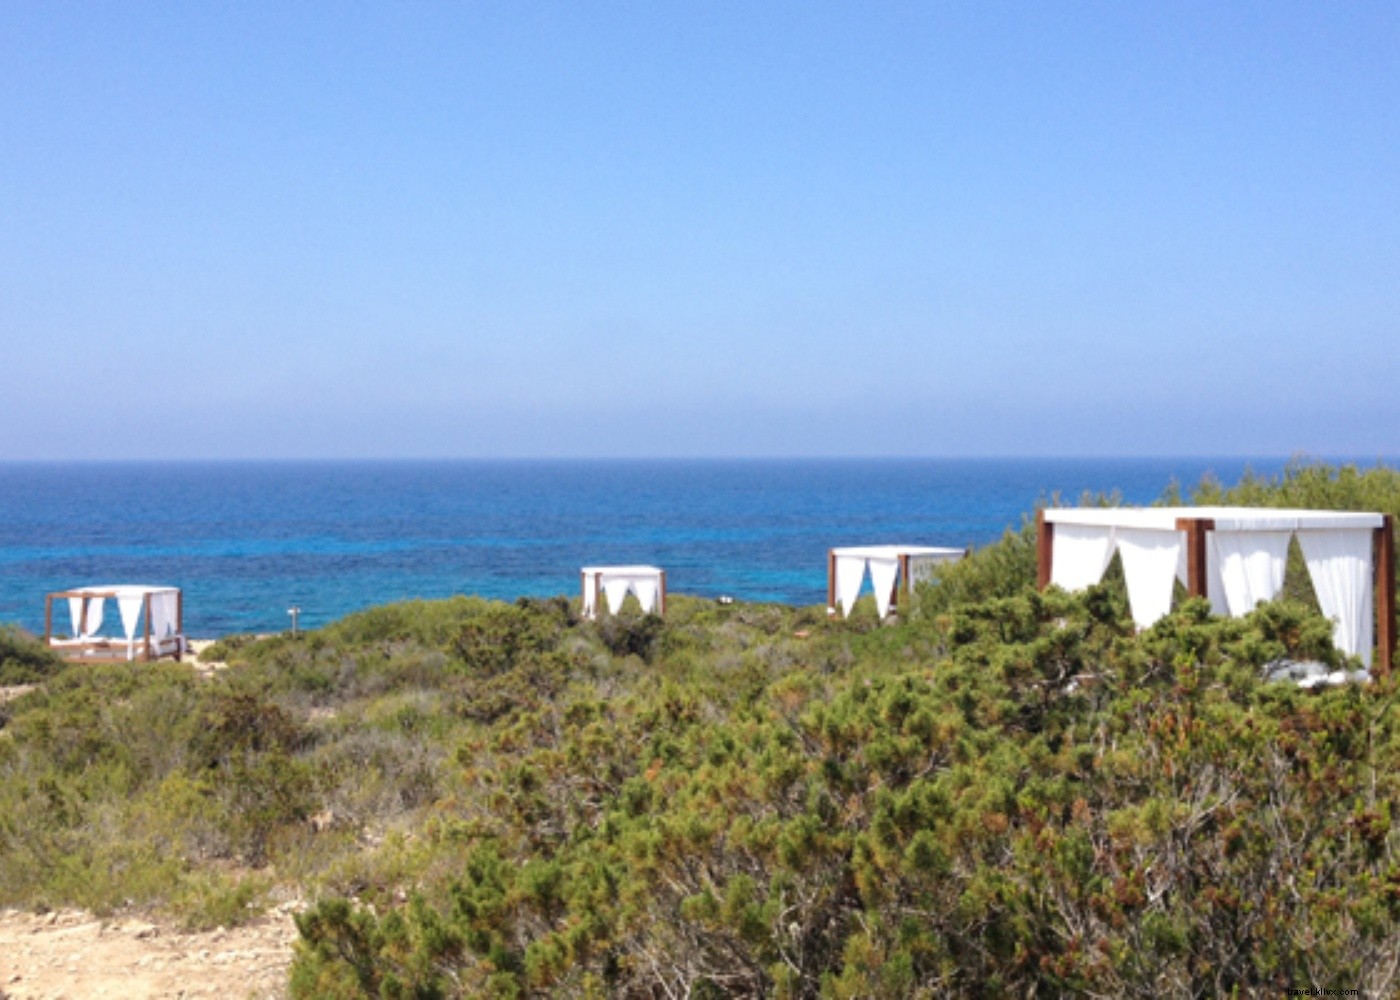 Do pôr do sol às praias turquesa:a vida na ilha de Formentera 